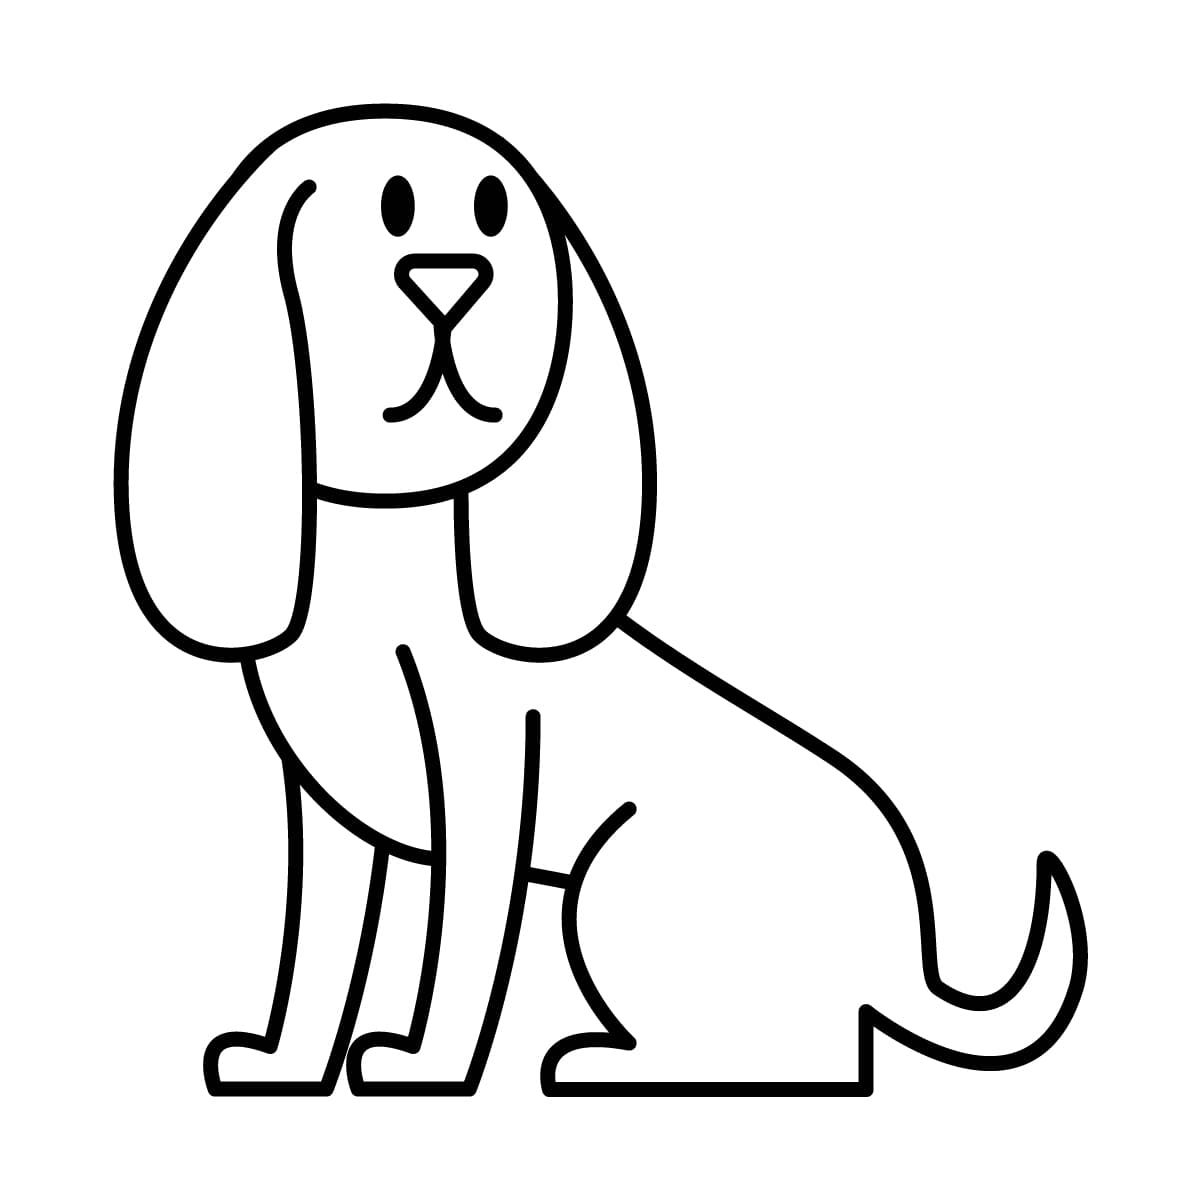 Dibujo de perro para colorear e imprimir - Dibujos y colores